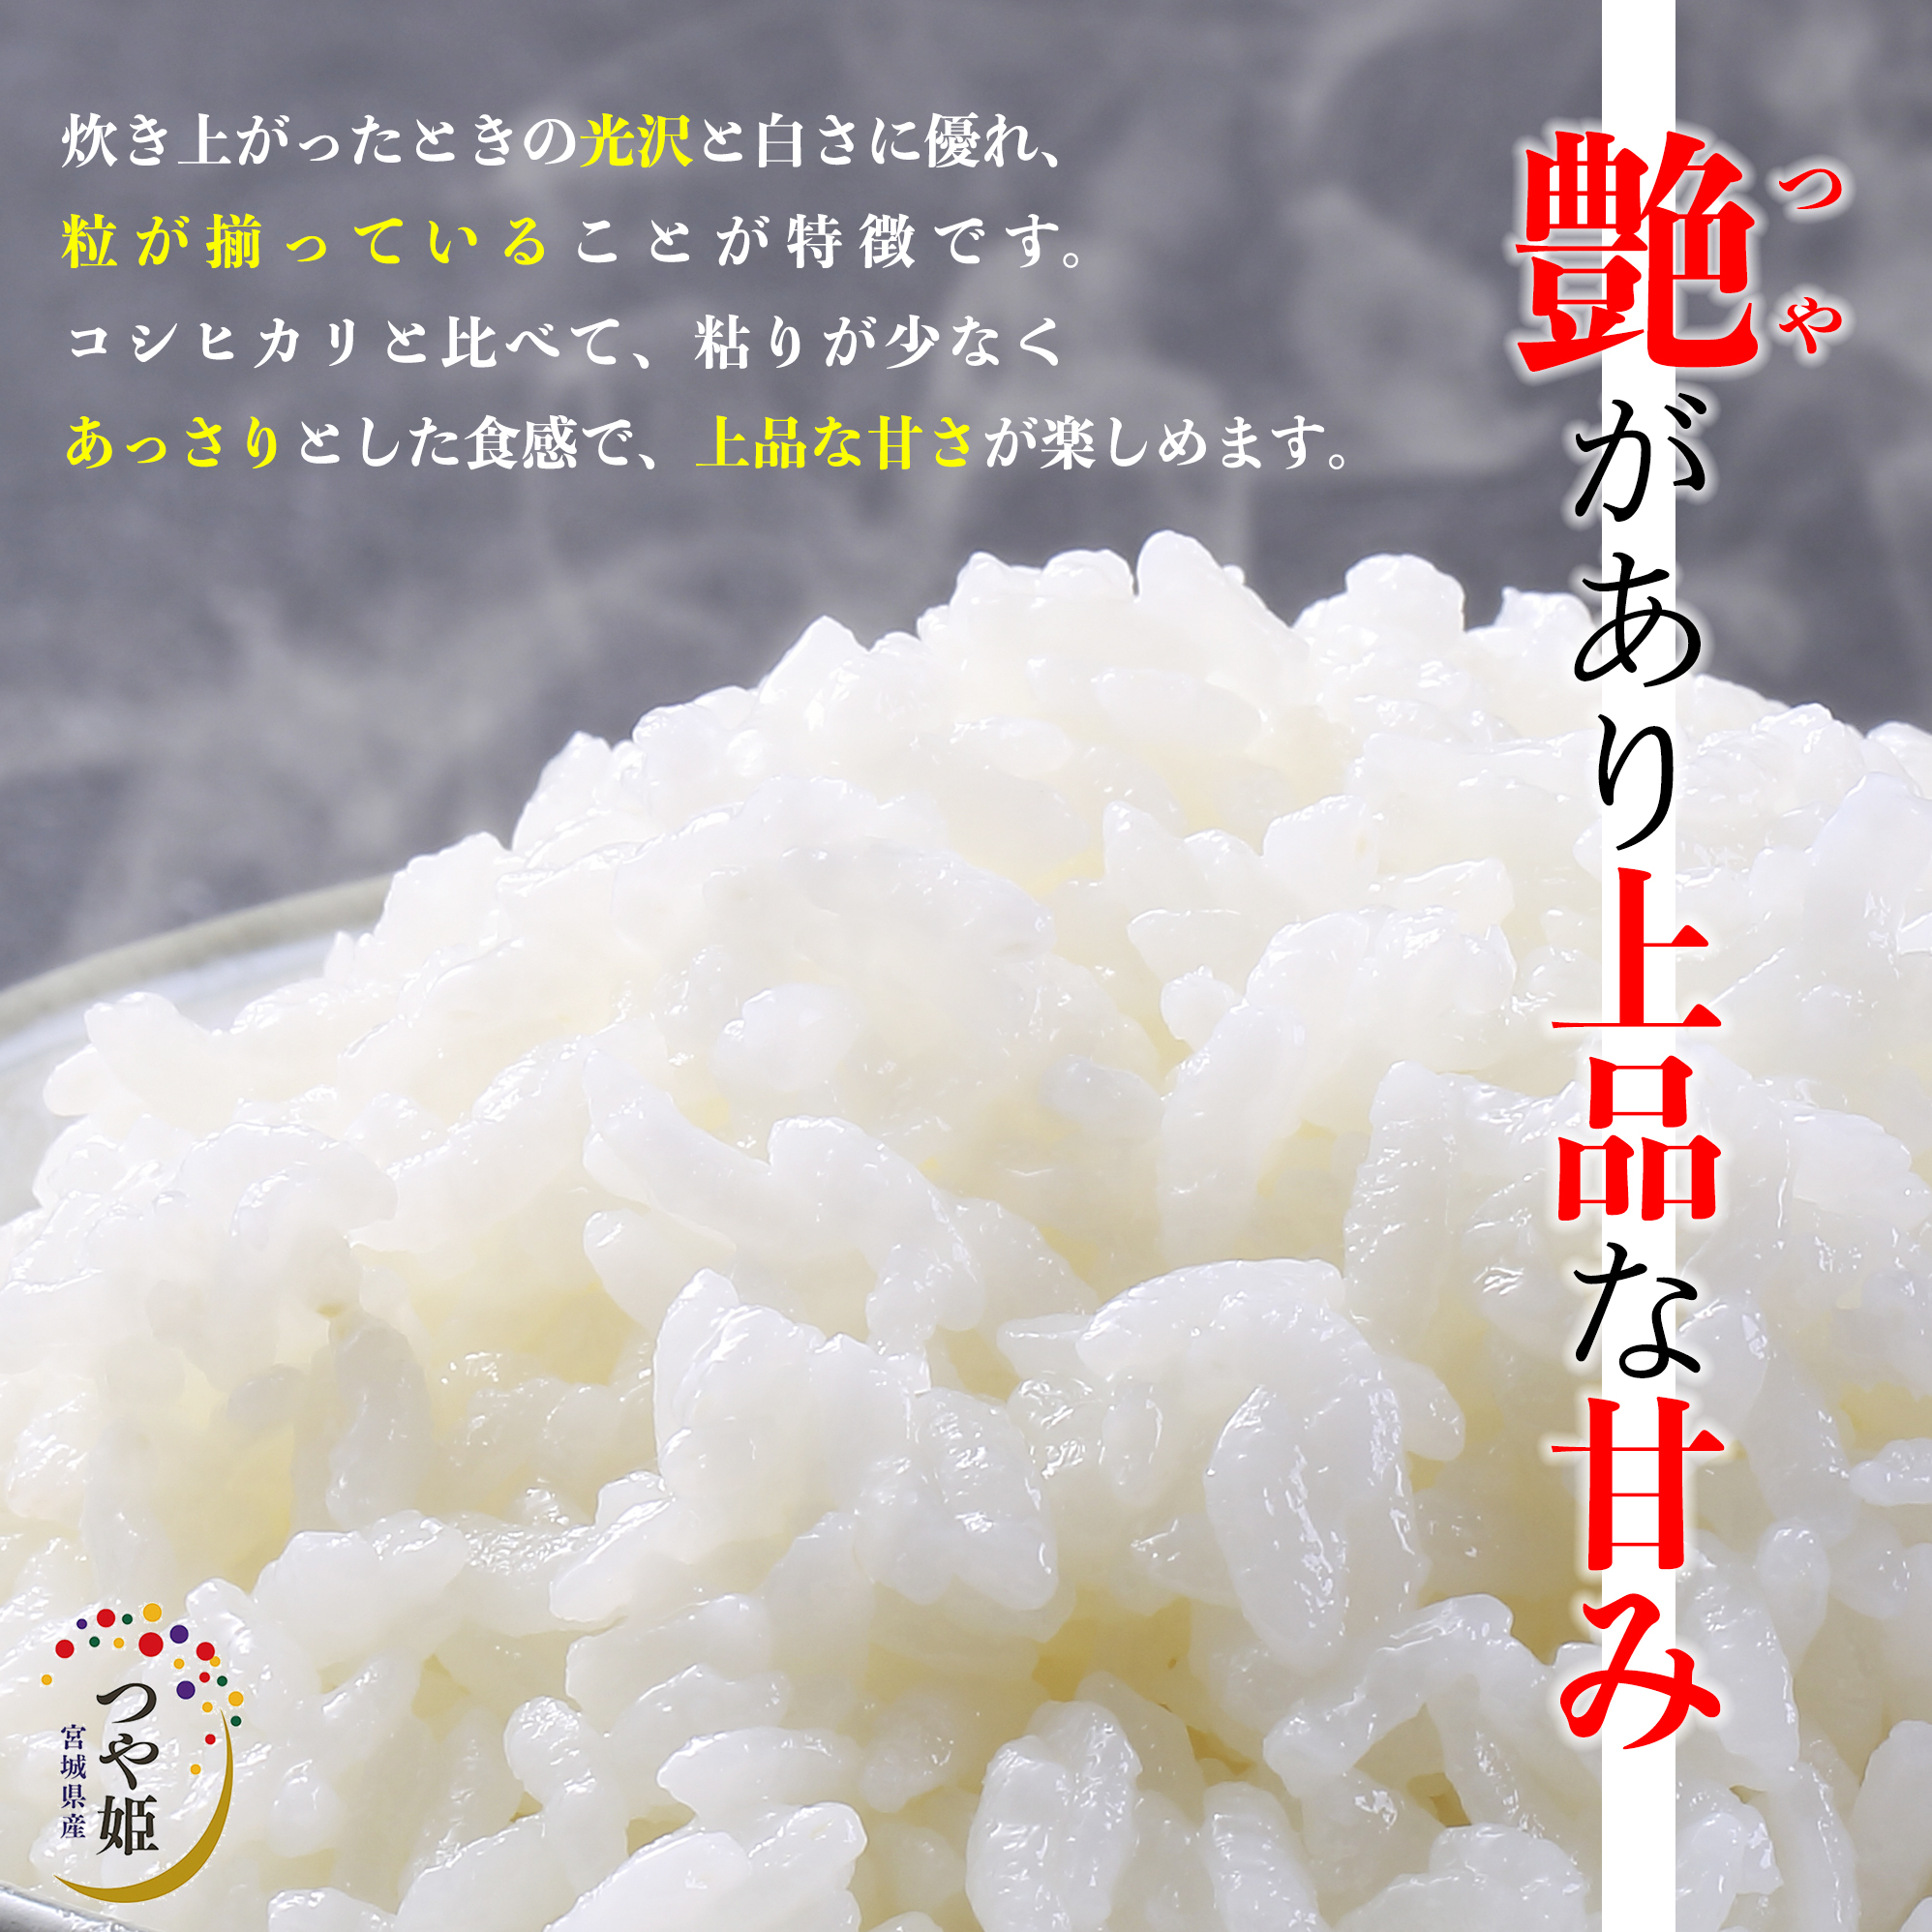  блеск .5kg 5kg×1 пакет . мир 5 год производство Miyagi префектура производство рис . рис белый рис .... рис одиночный один сырье рис бренд рис 5 kilo бесплатная доставка внутренний производство местного производства 10 kilo 